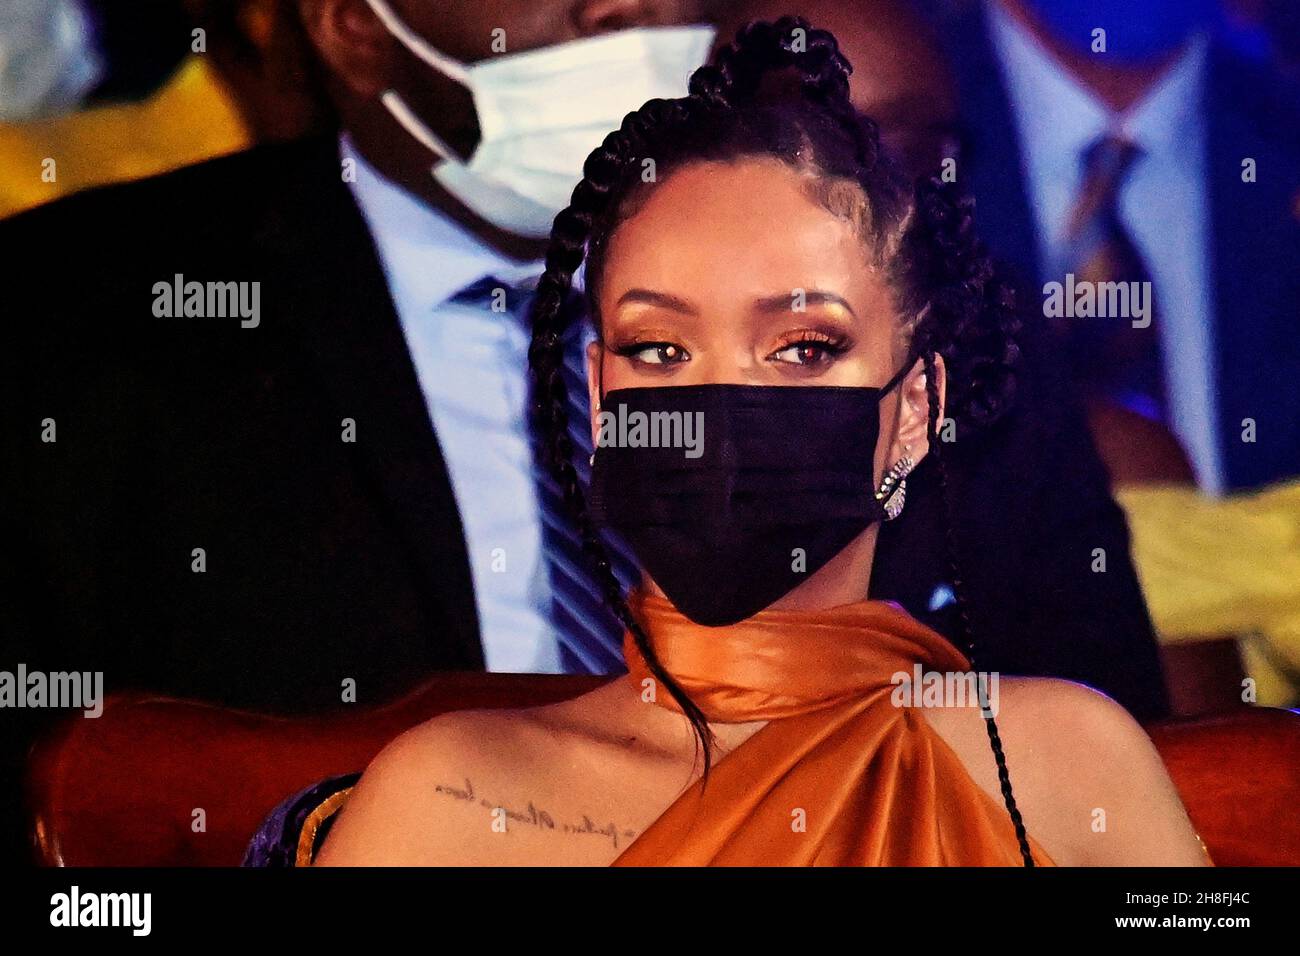 Sängerin Rihanna blickt auf die Eröffnungszeremonie des Präsidenten anlässlich der Geburt einer neuen republik auf Barbados, Bridgetown, Barbados. Bilddatum: Dienstag, 30. November 2021. Stockfoto